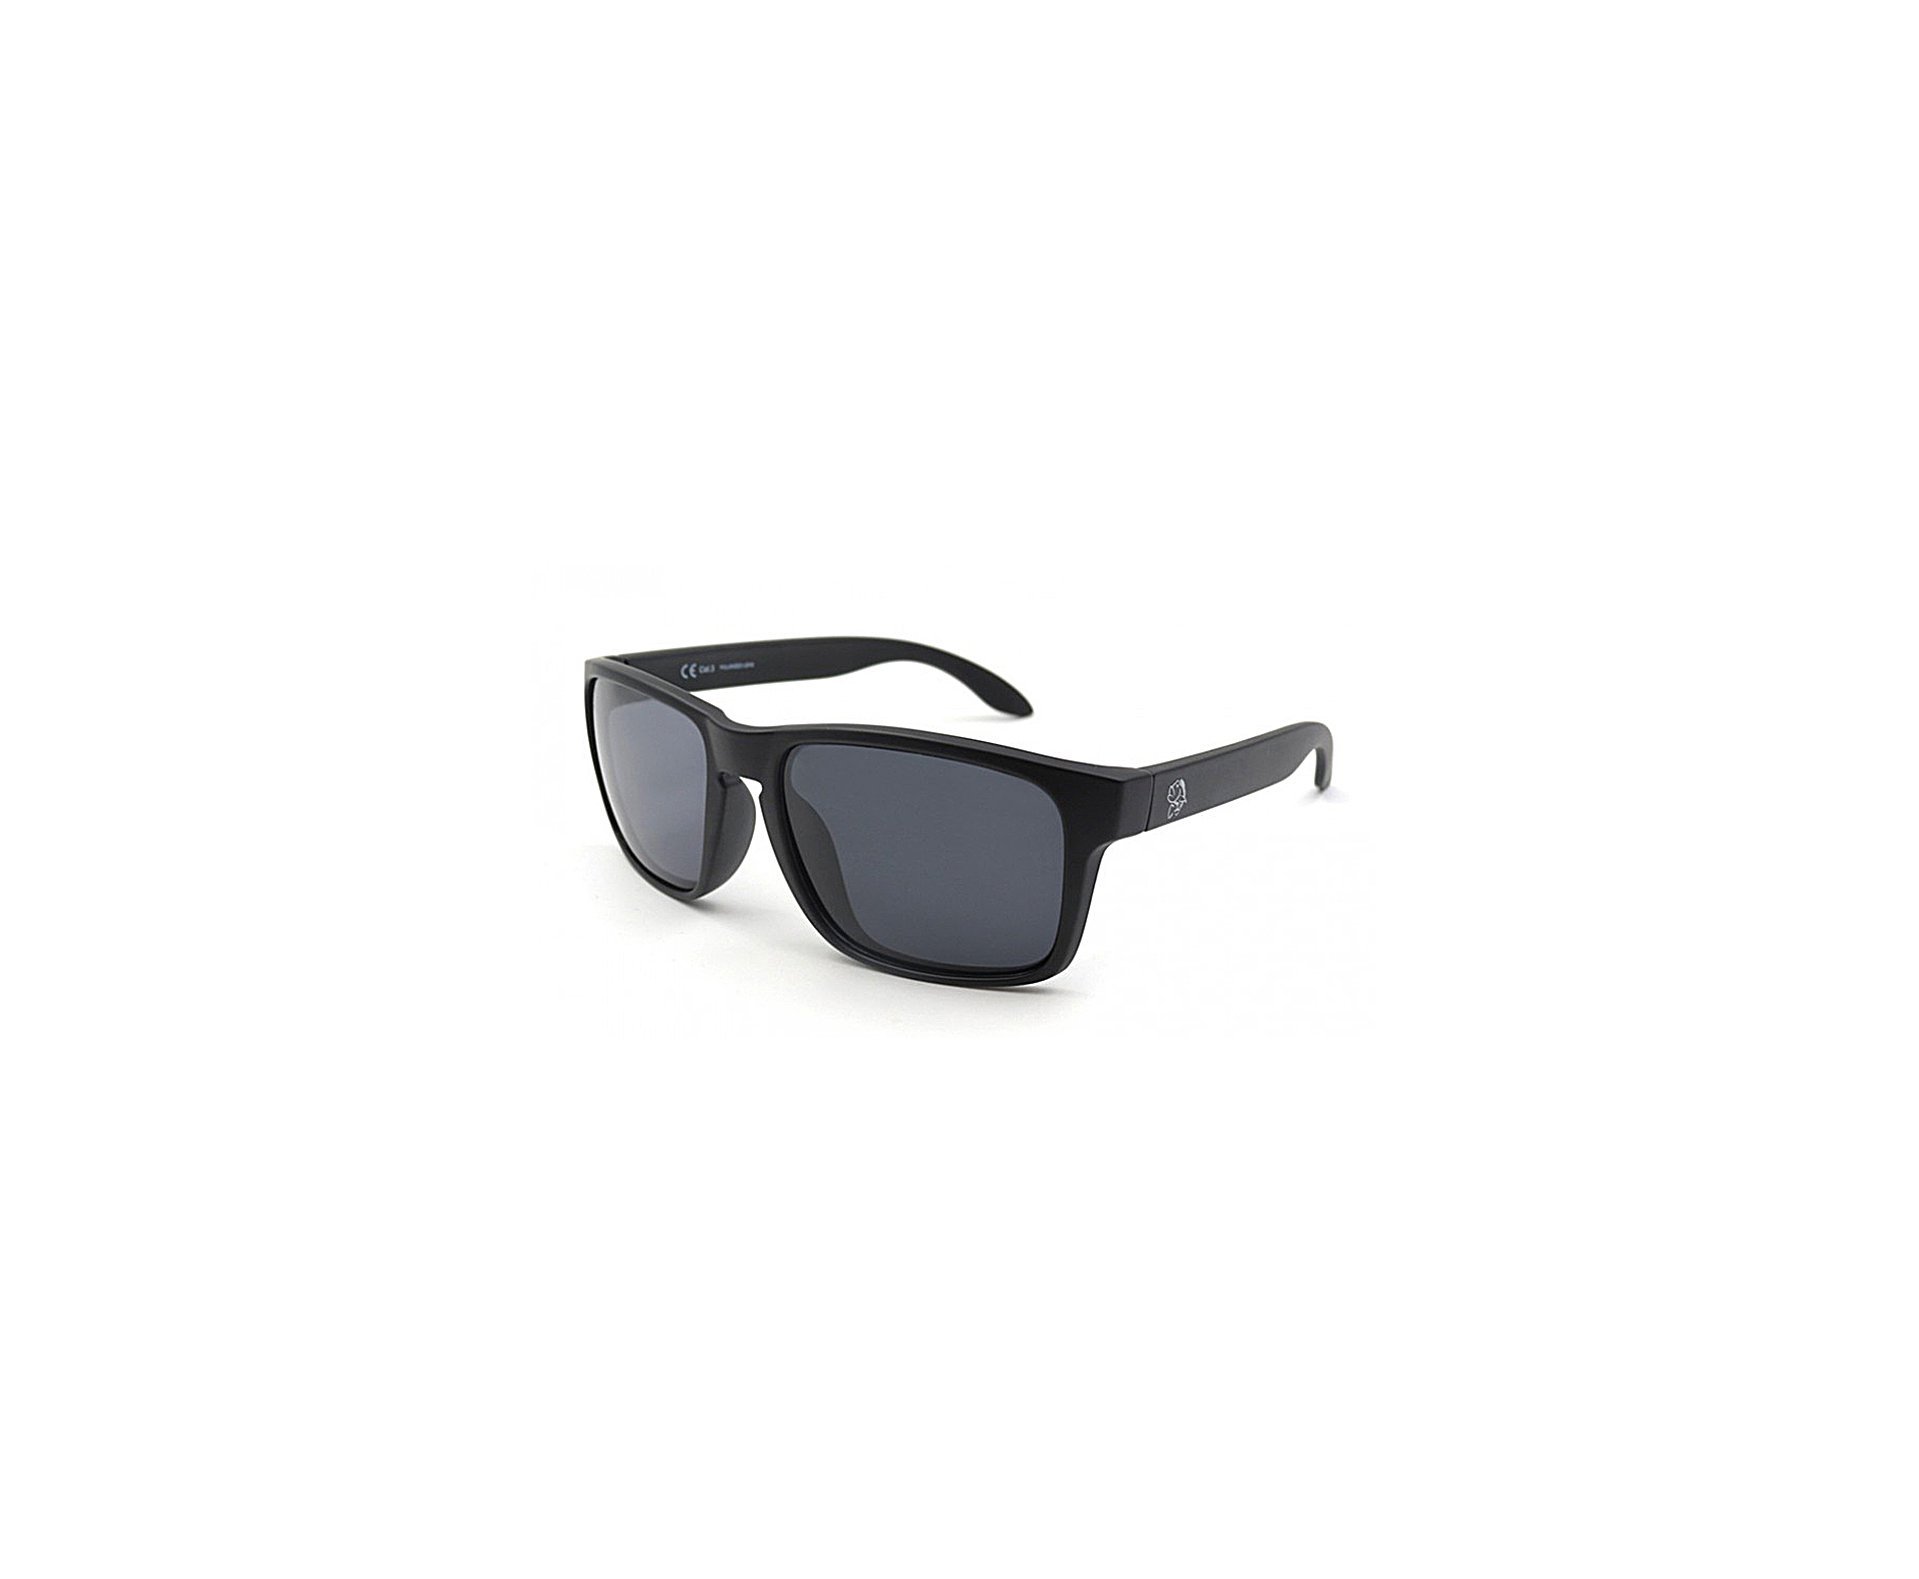 óculos Polarizado Pro-tsuri Black Drum Lente Fumê 10p0044